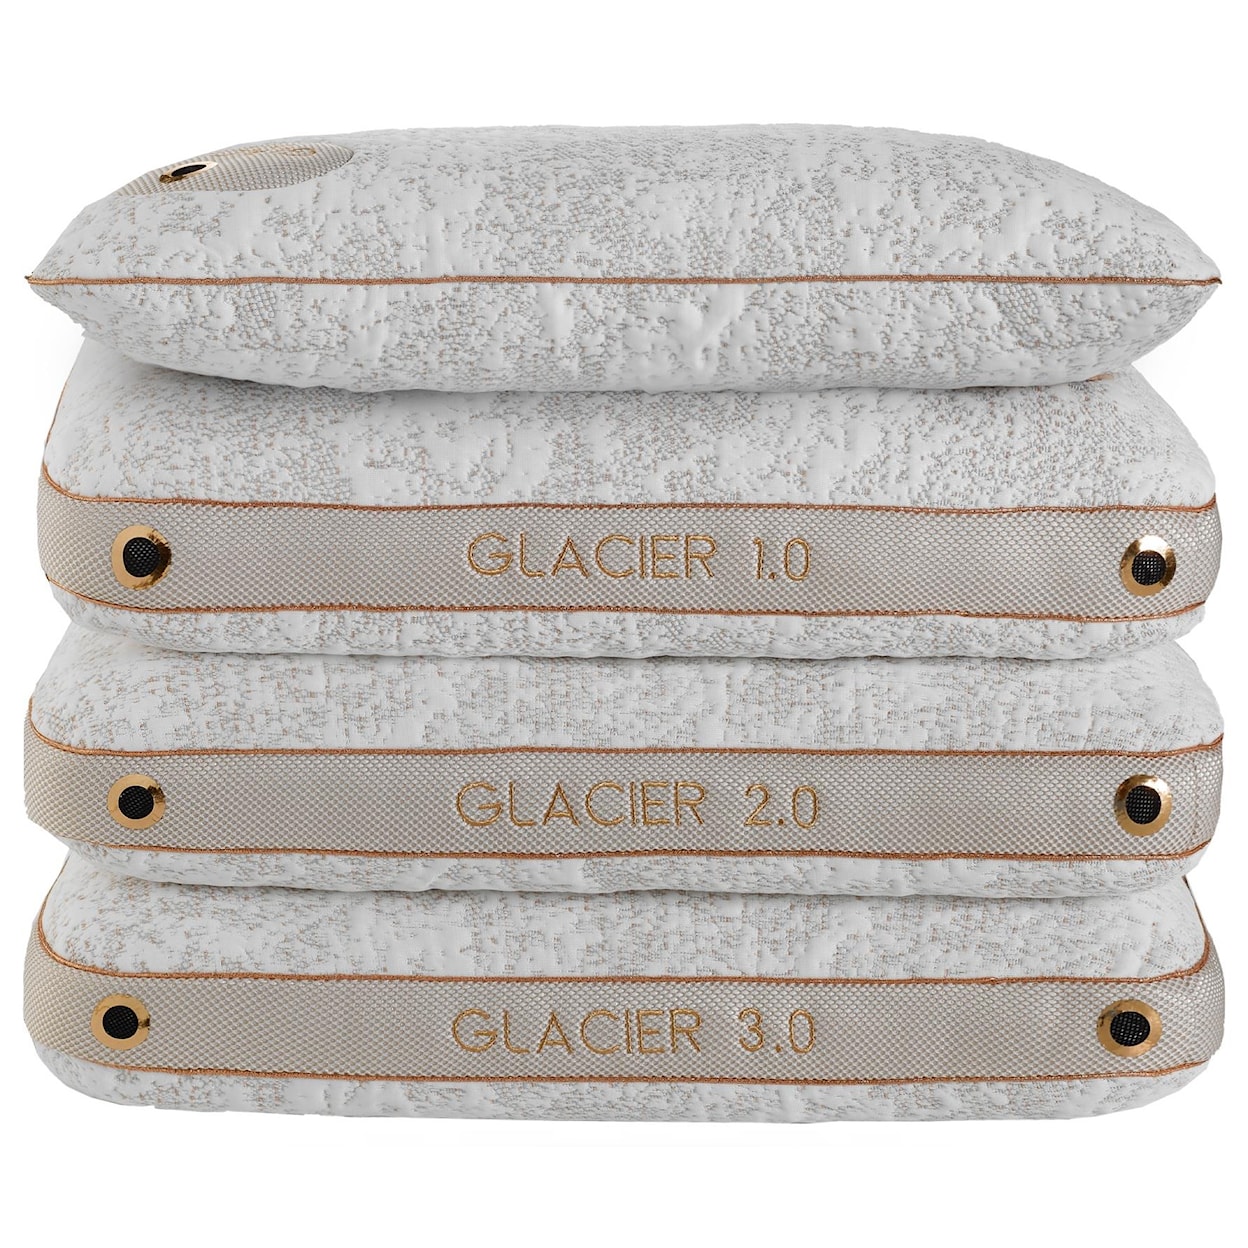 Bedgear Glacier 0.0 Pillow 